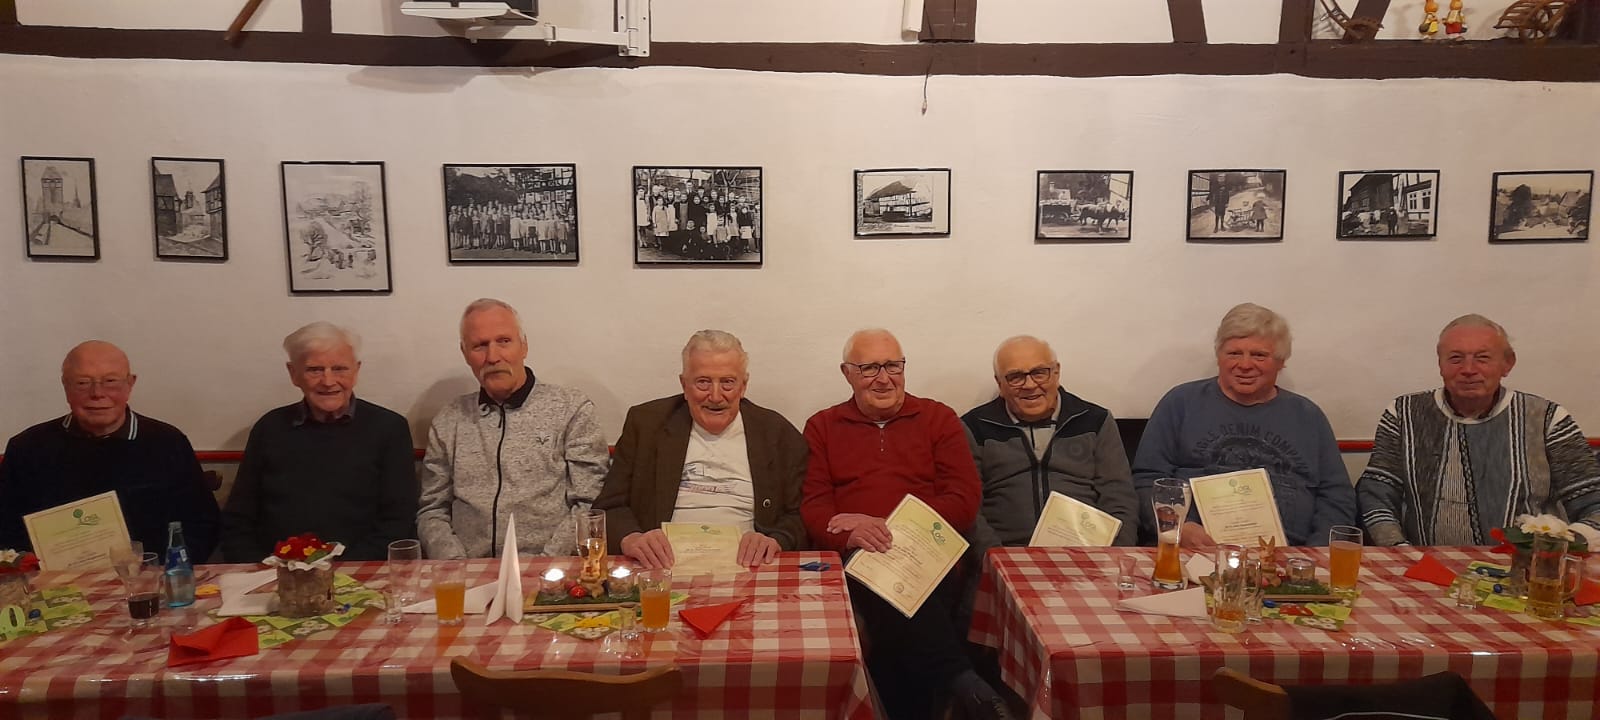 Zu den lebenden Gründungsmitgliedern gehören v. l. n. r.: Heinz Pfeiffer, Adolf Steiper, Dietmar Hillebrecht, Georg Heerdt, Günter Roth, Edwin Hartmann, Lothar Schäfer und Eckhard Ewinger.